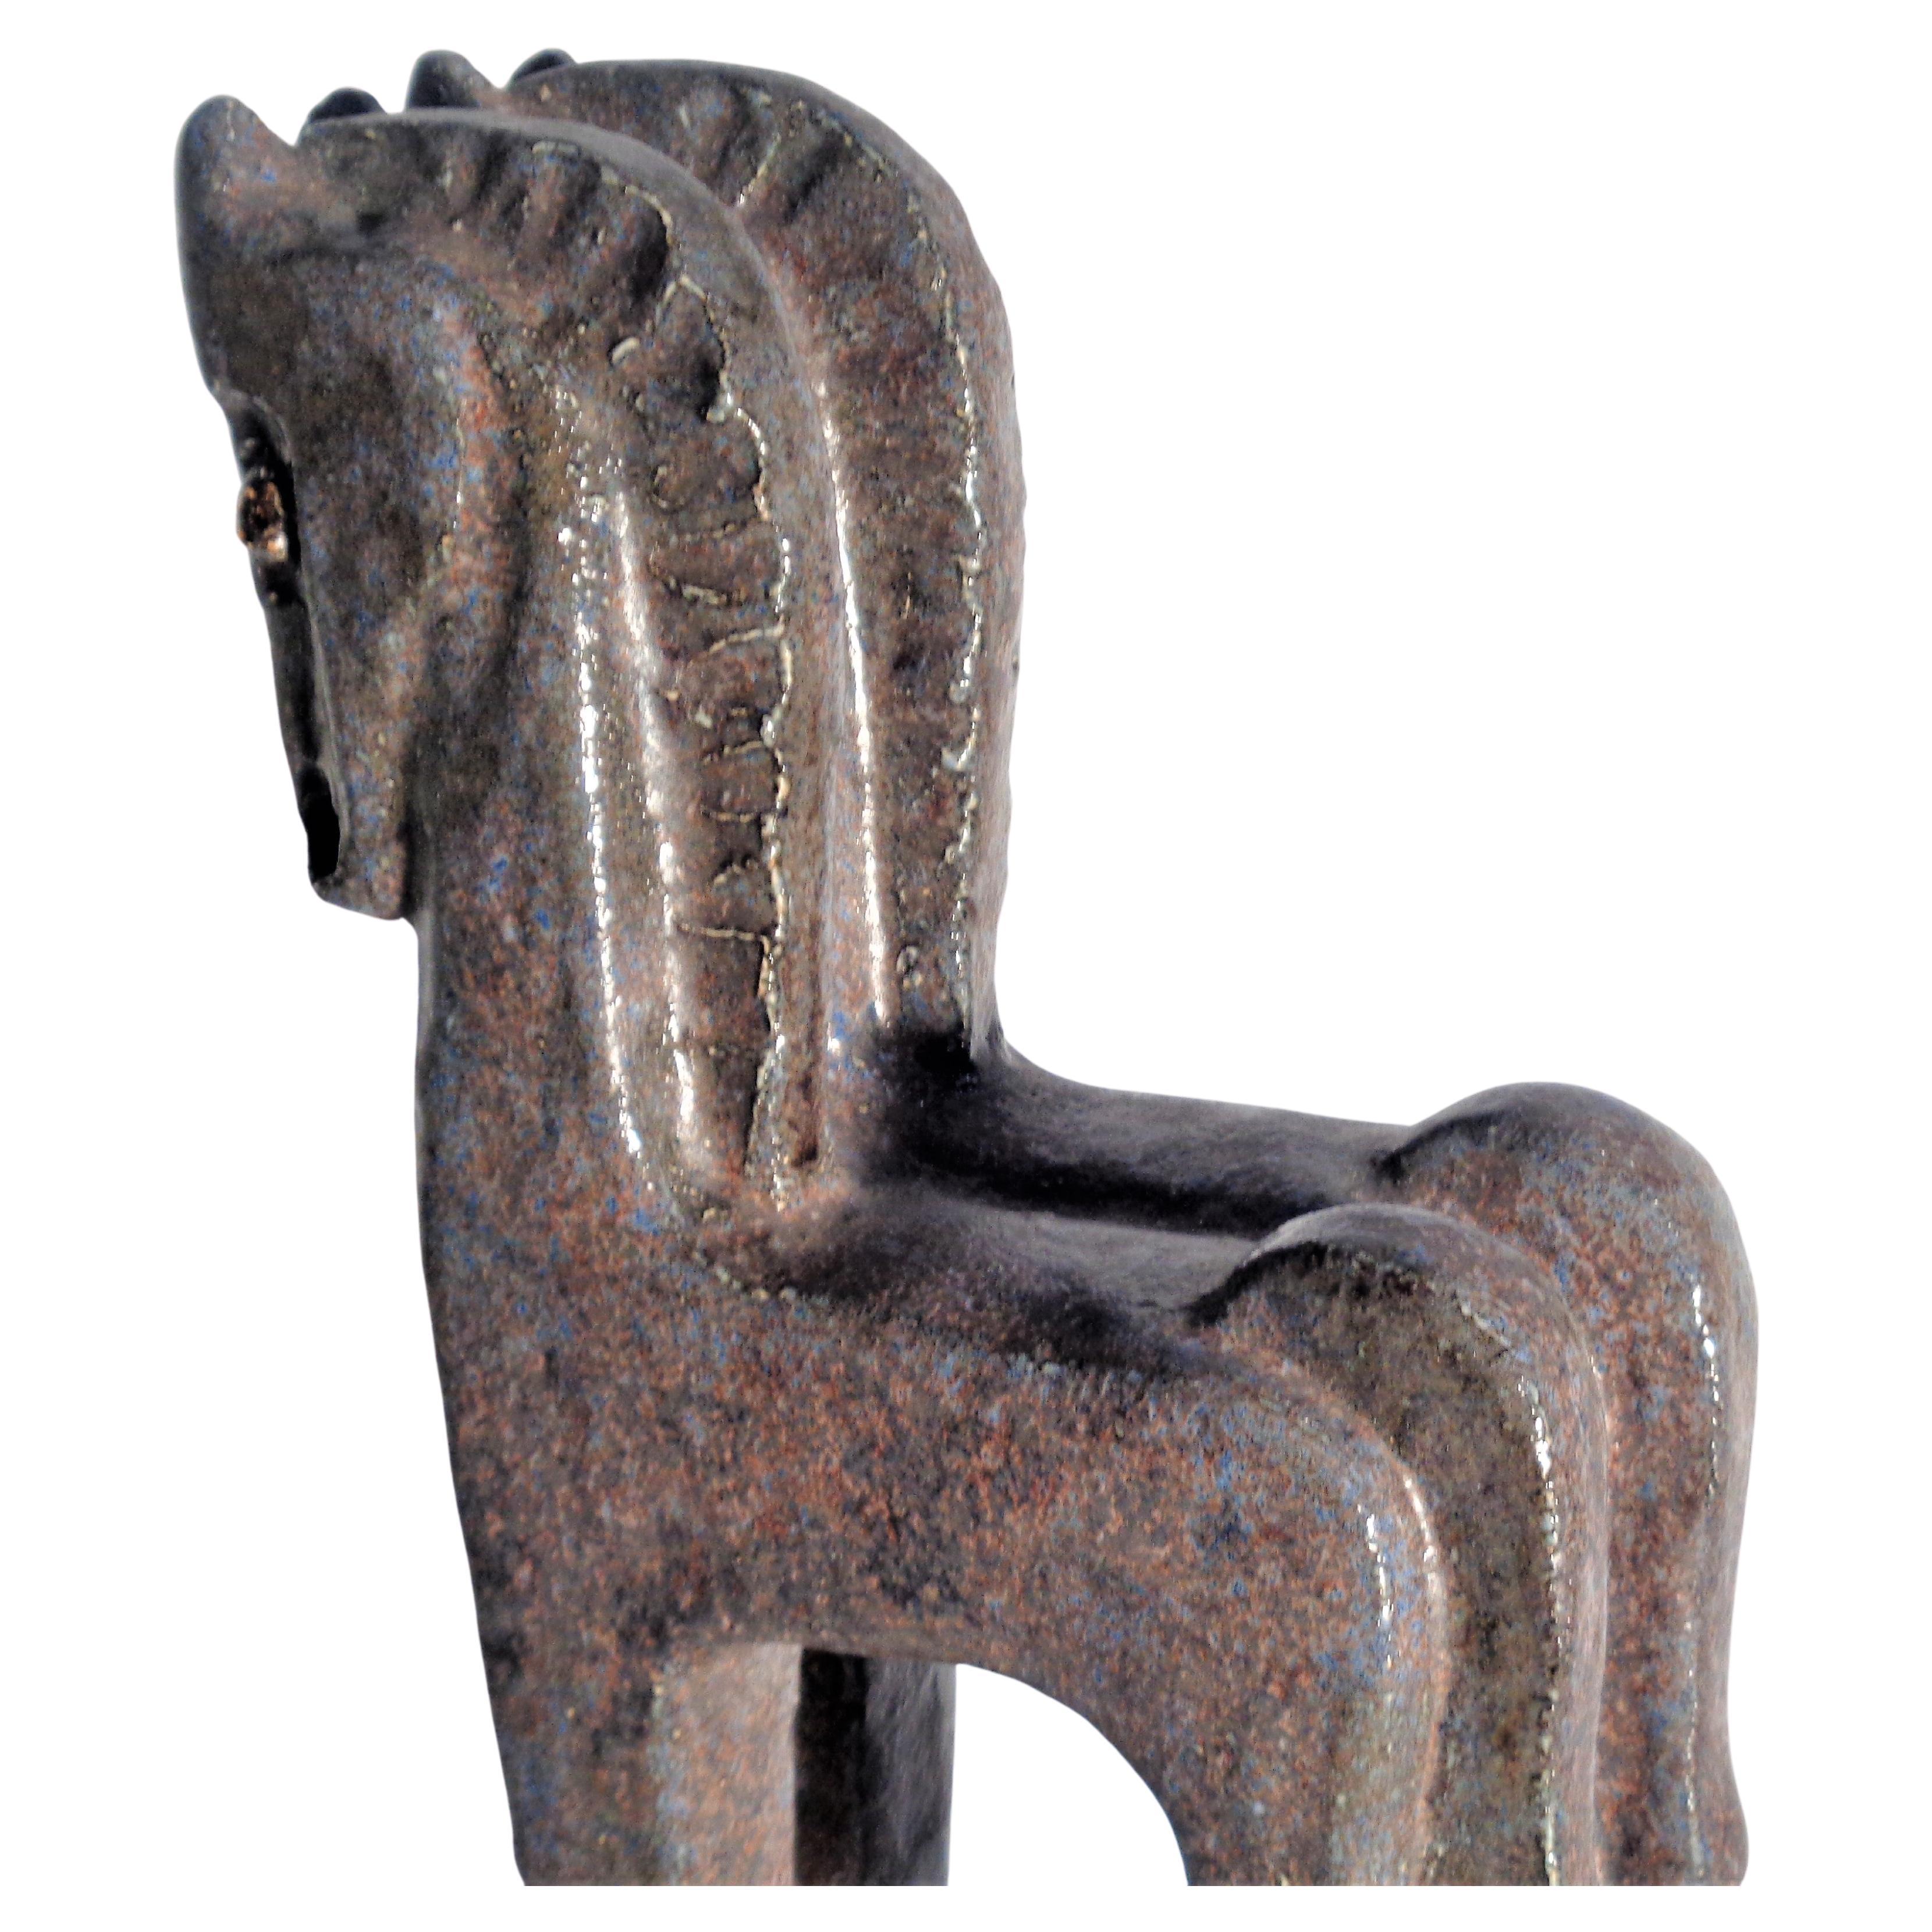 Fired Standing Horses Cubist Style Ceramic Sculpture, Helmut Schaffenacker